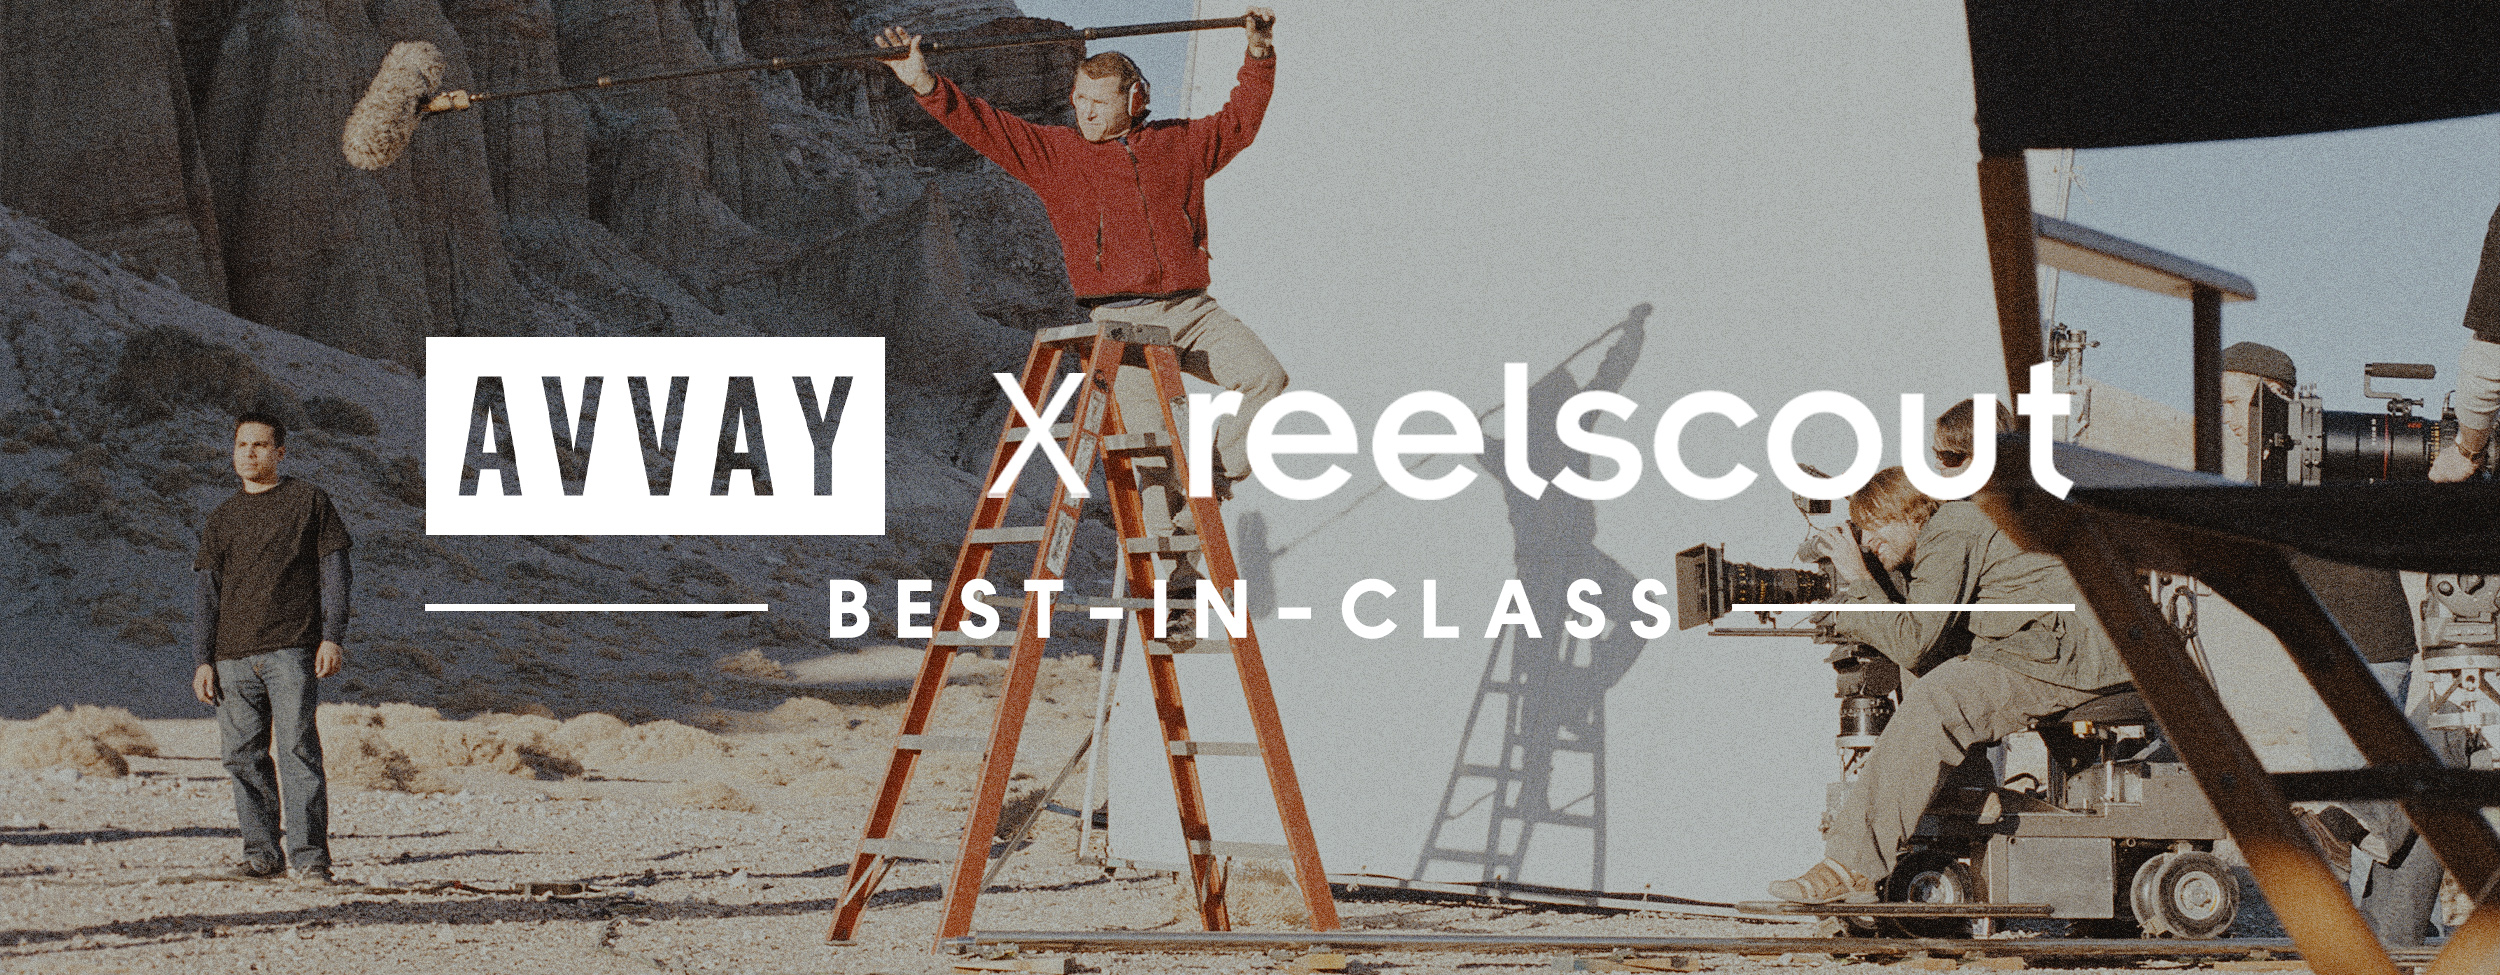 Best Photographers in Austin: AVVAY X Reel-Scout Best In Class